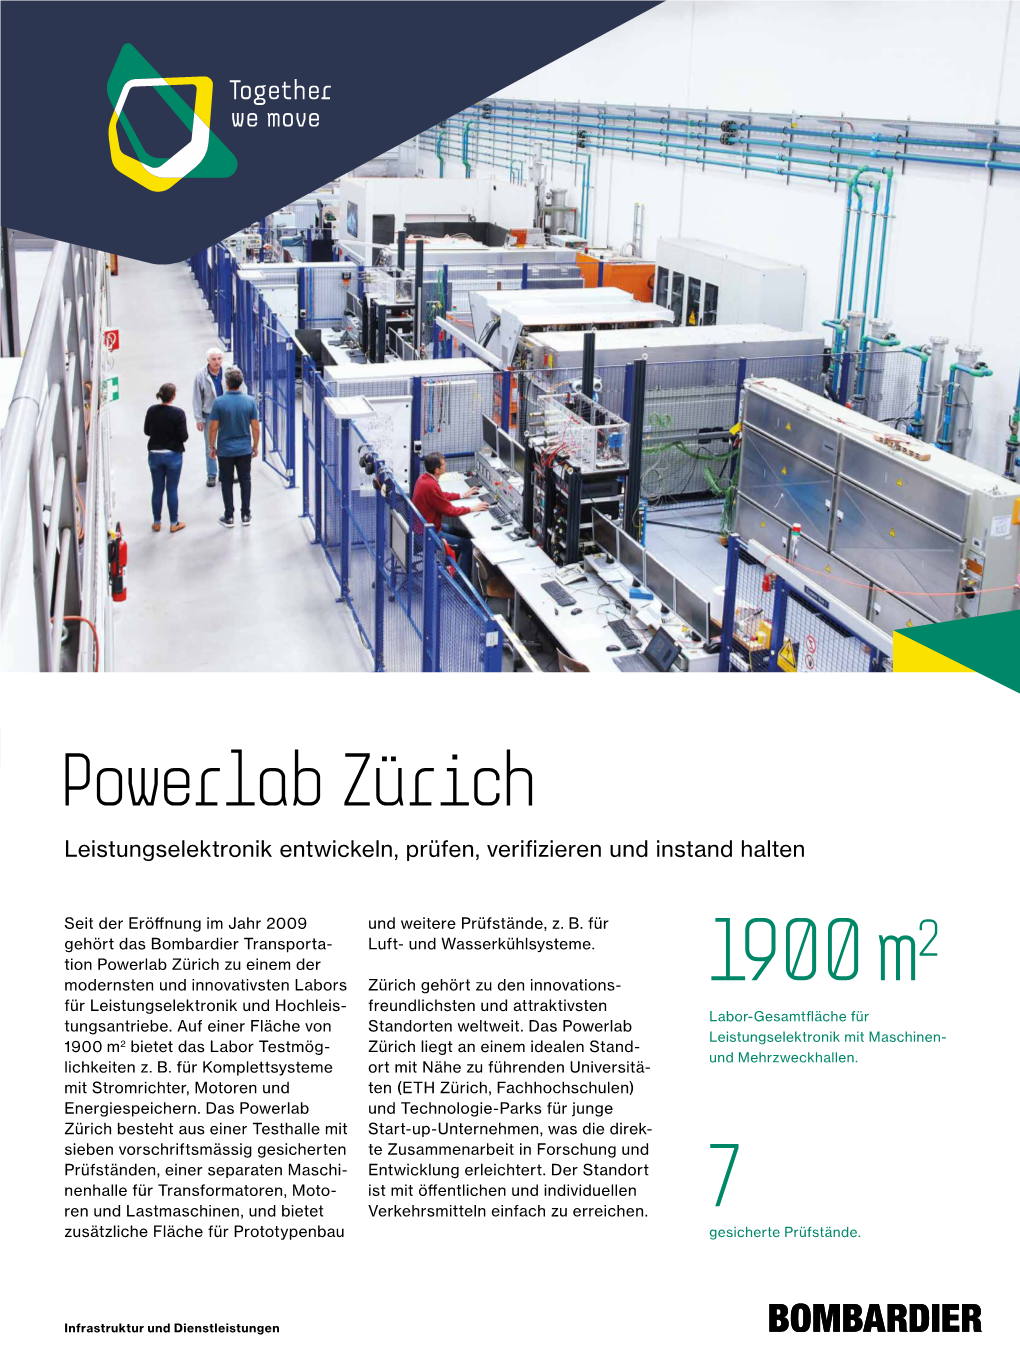 Powerlab Zürich Leistungselektronik Entwickeln, Prüfen, Verifizieren Und Instand Halten